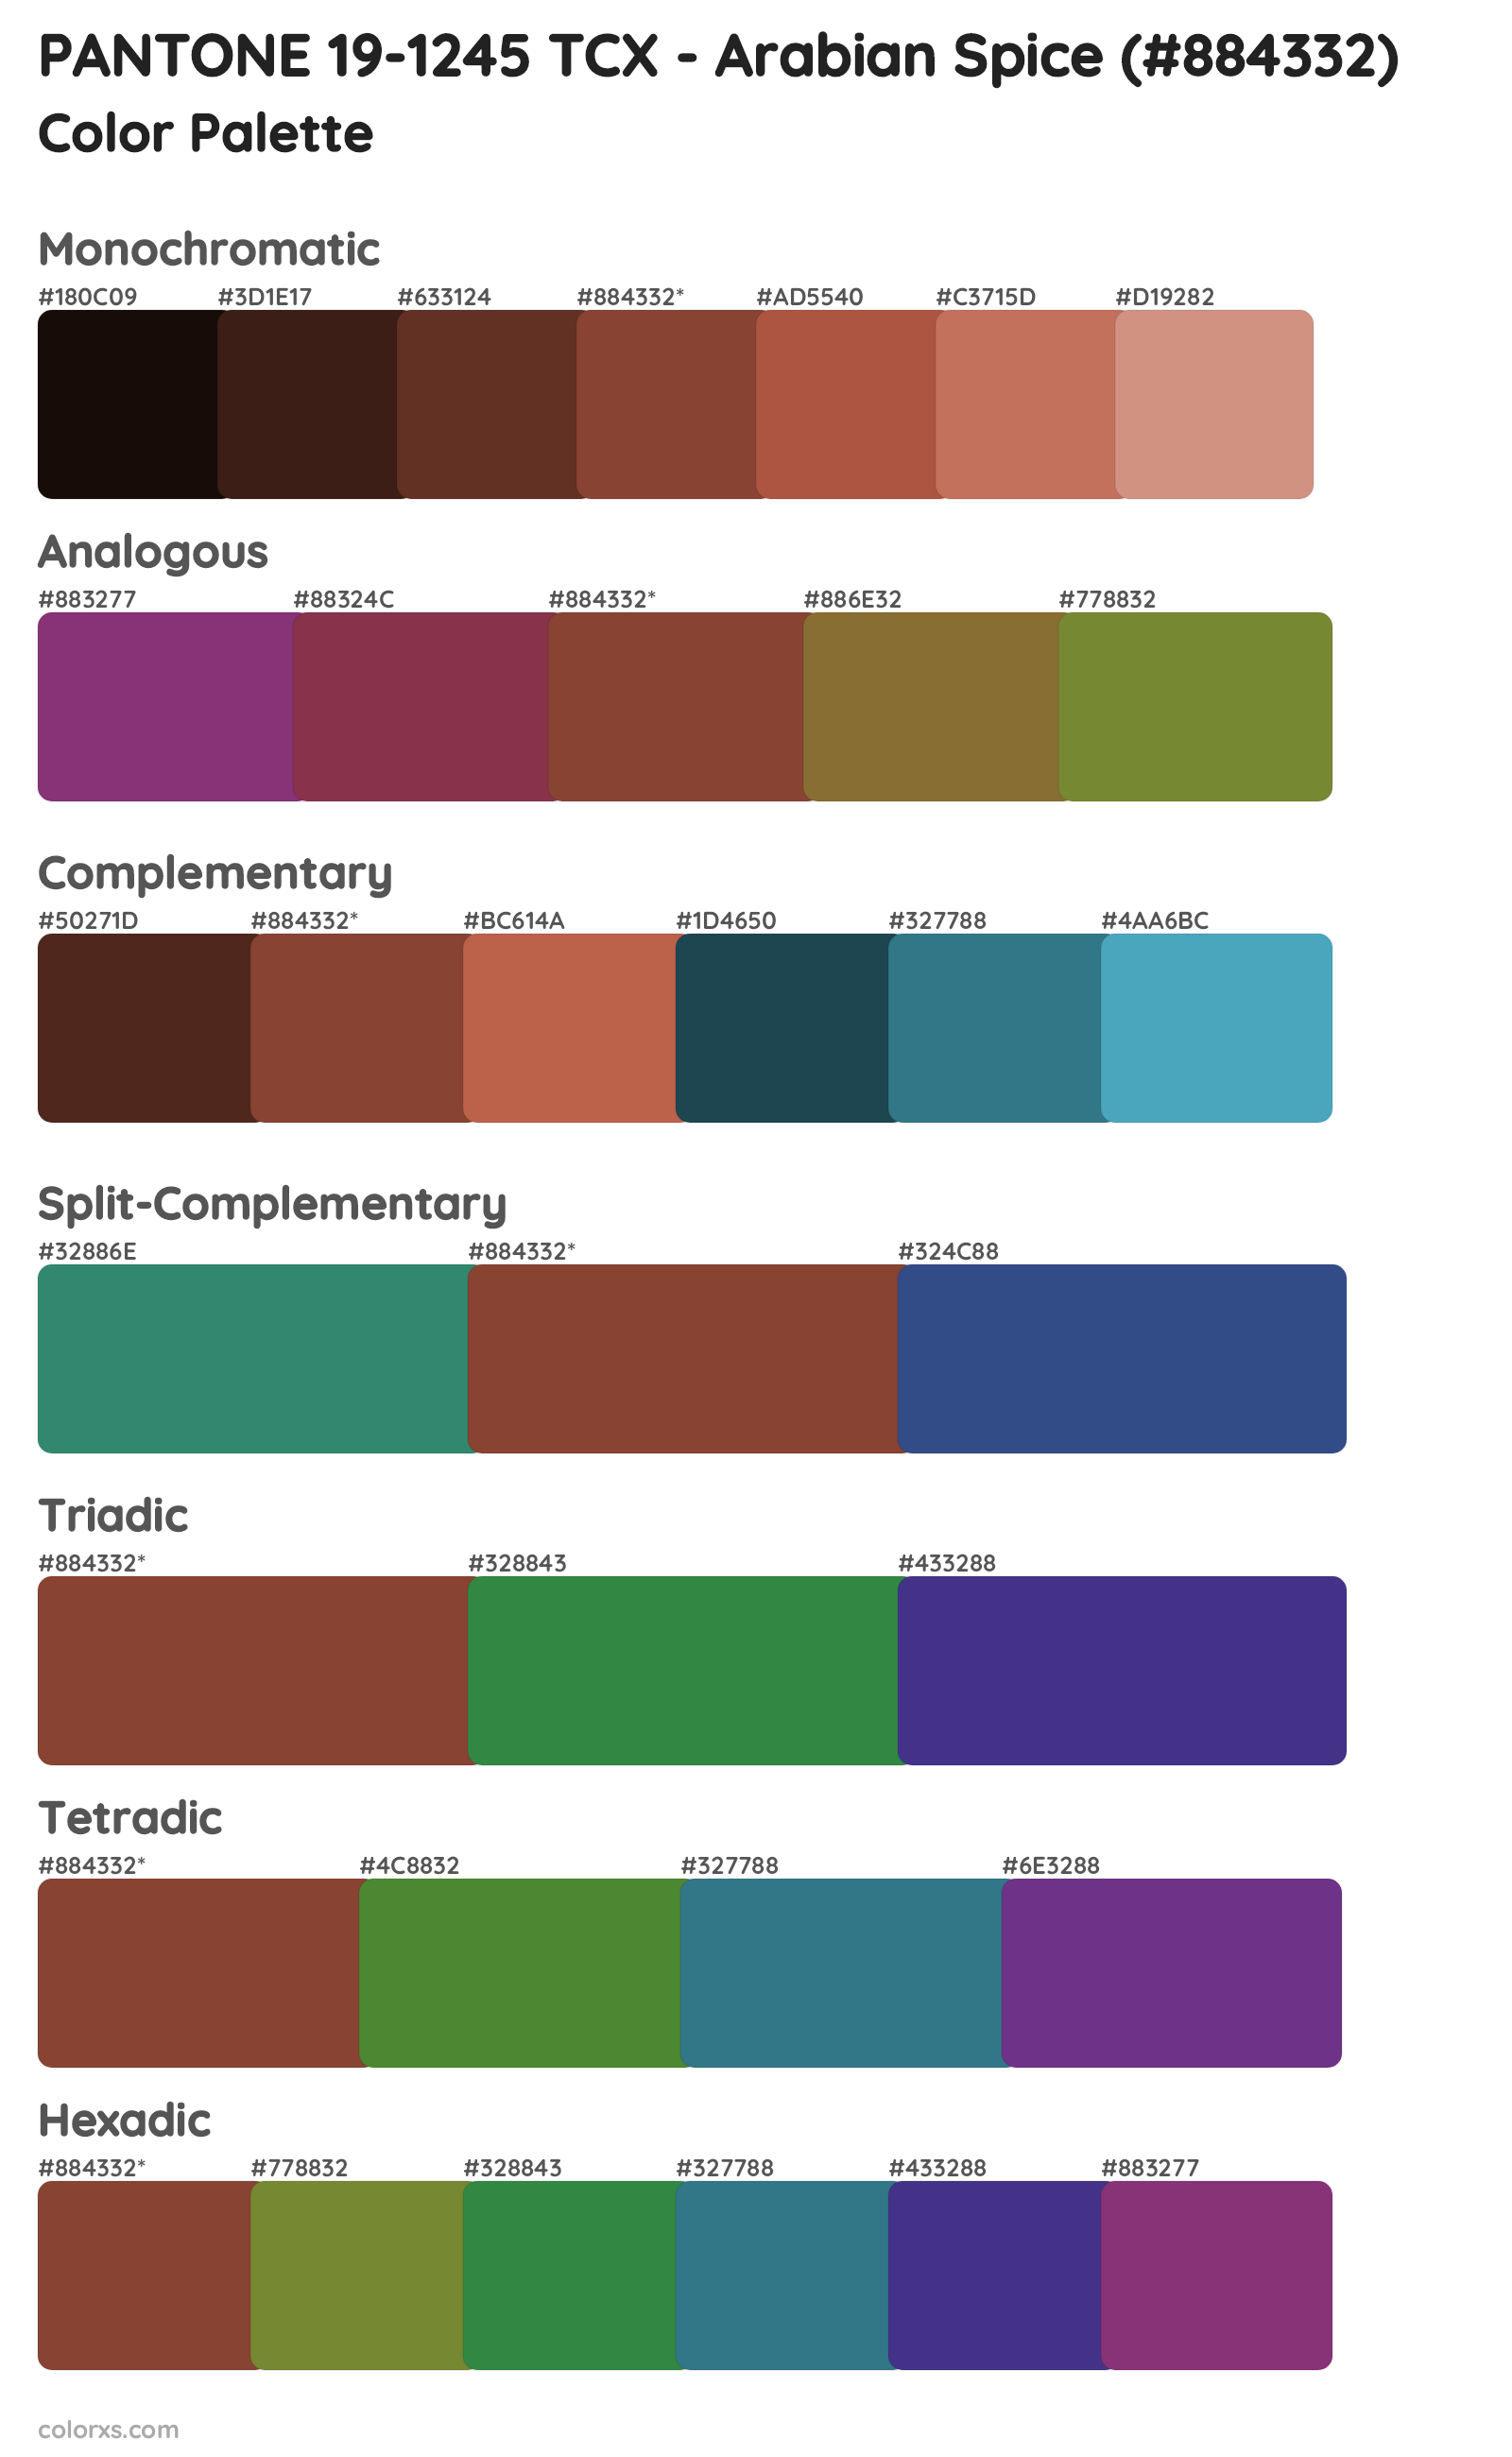 PANTONE 19-1245 TCX - Arabian Spice Color Scheme Palettes